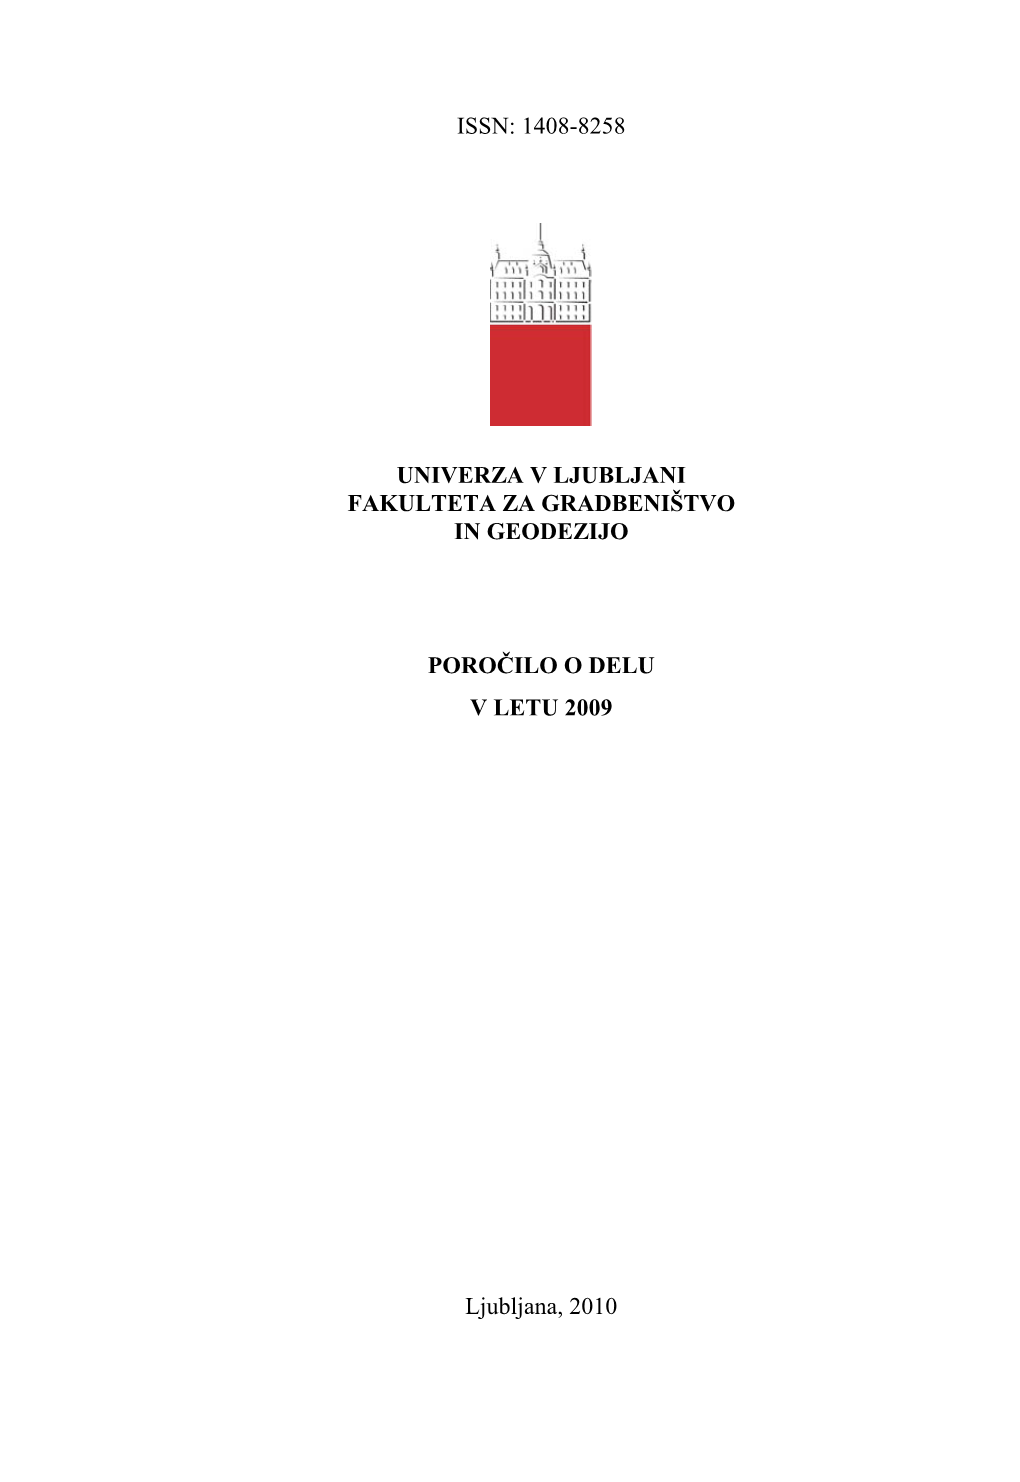 Poročilo O Delu UL FGG 2009